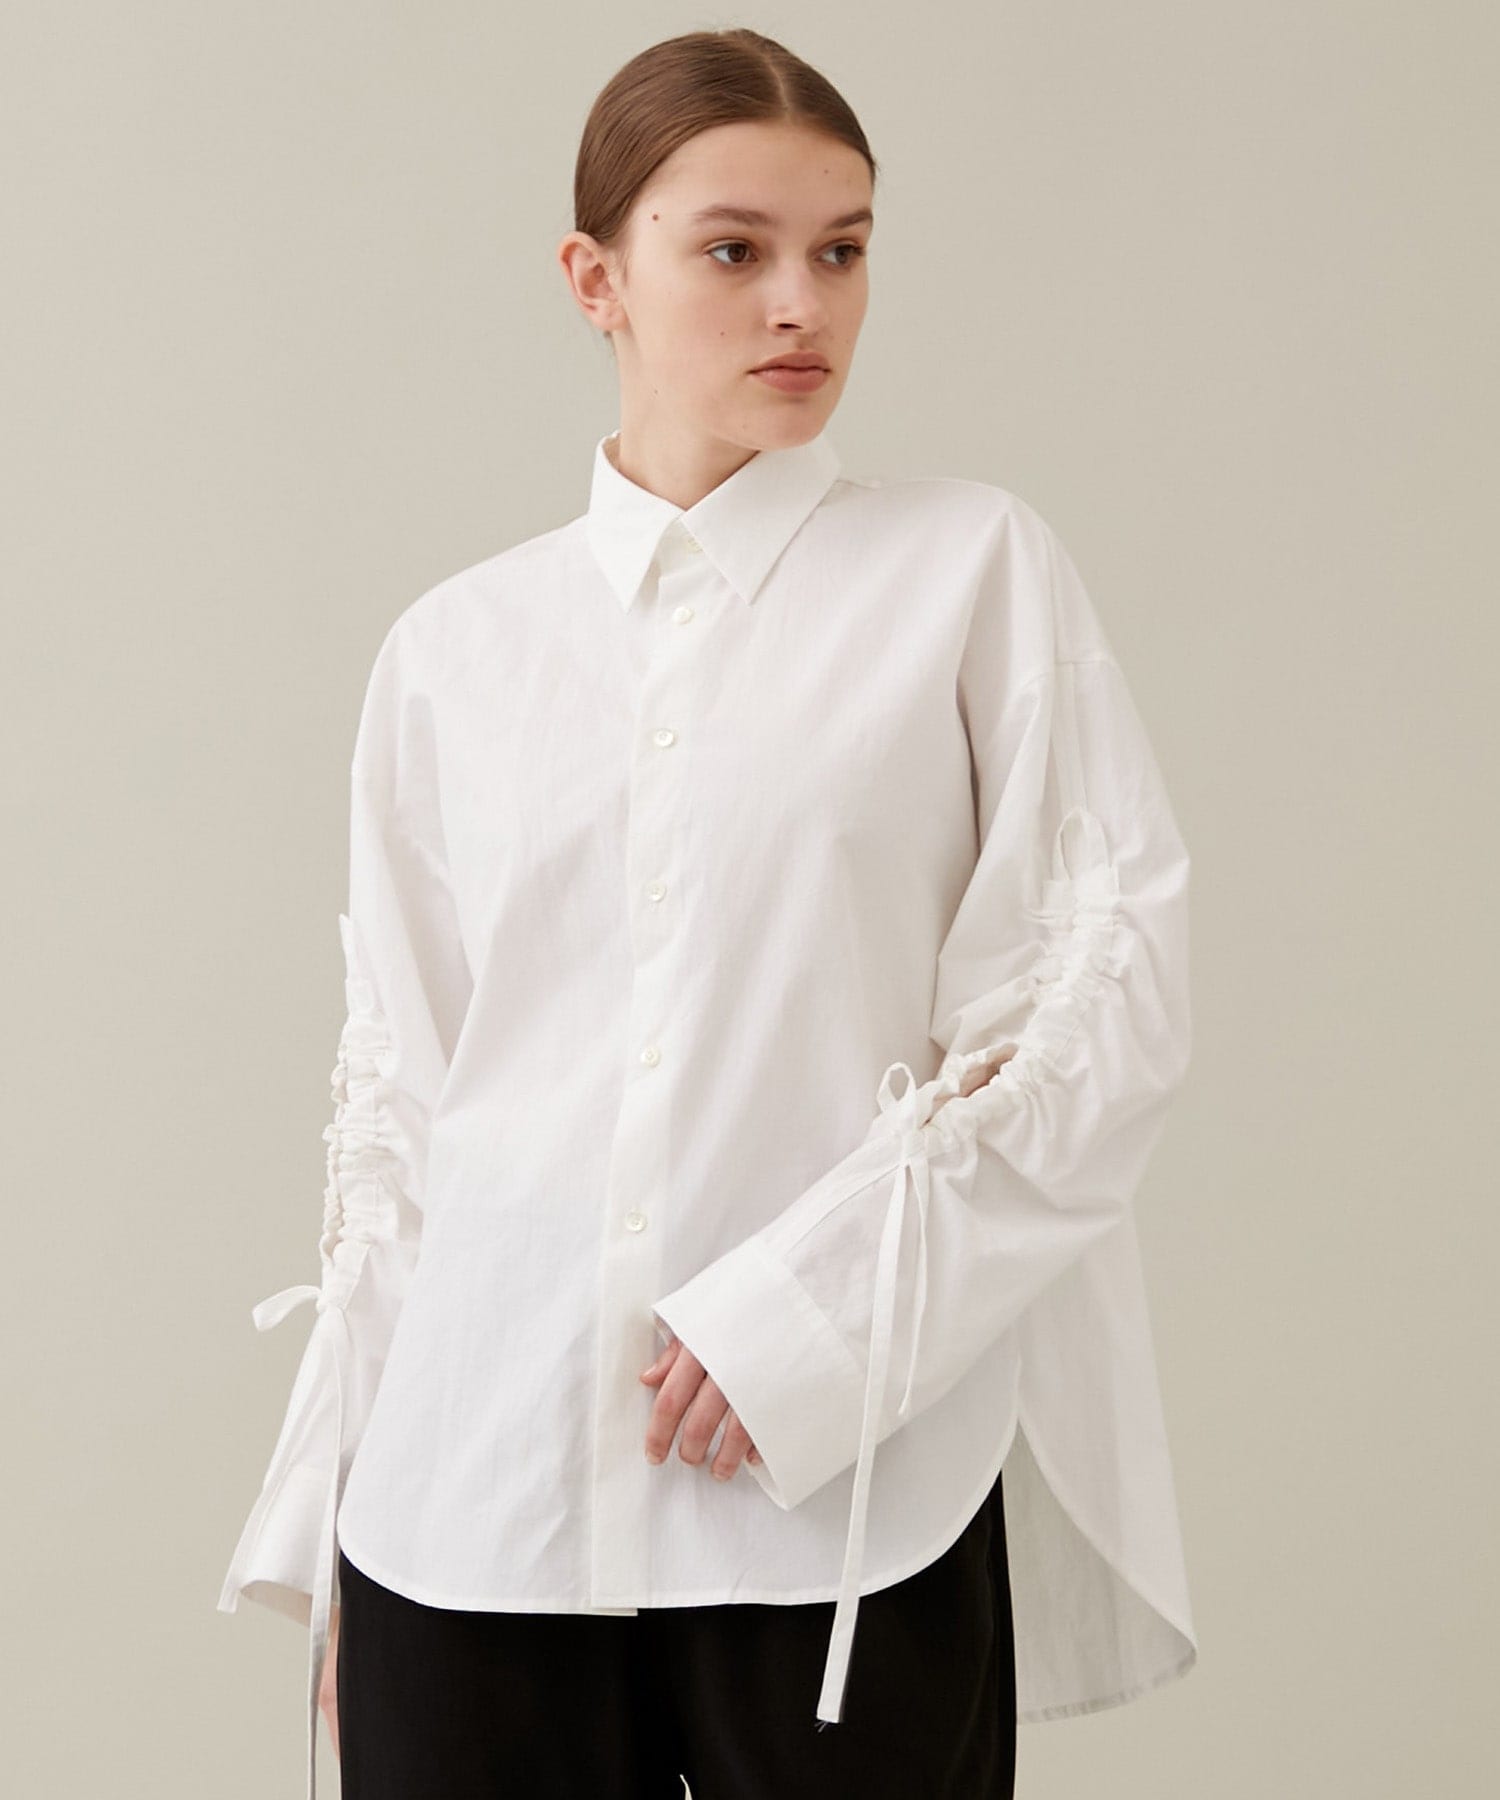 ujoh Gathered Hole Sleeve Shirt (White)patma